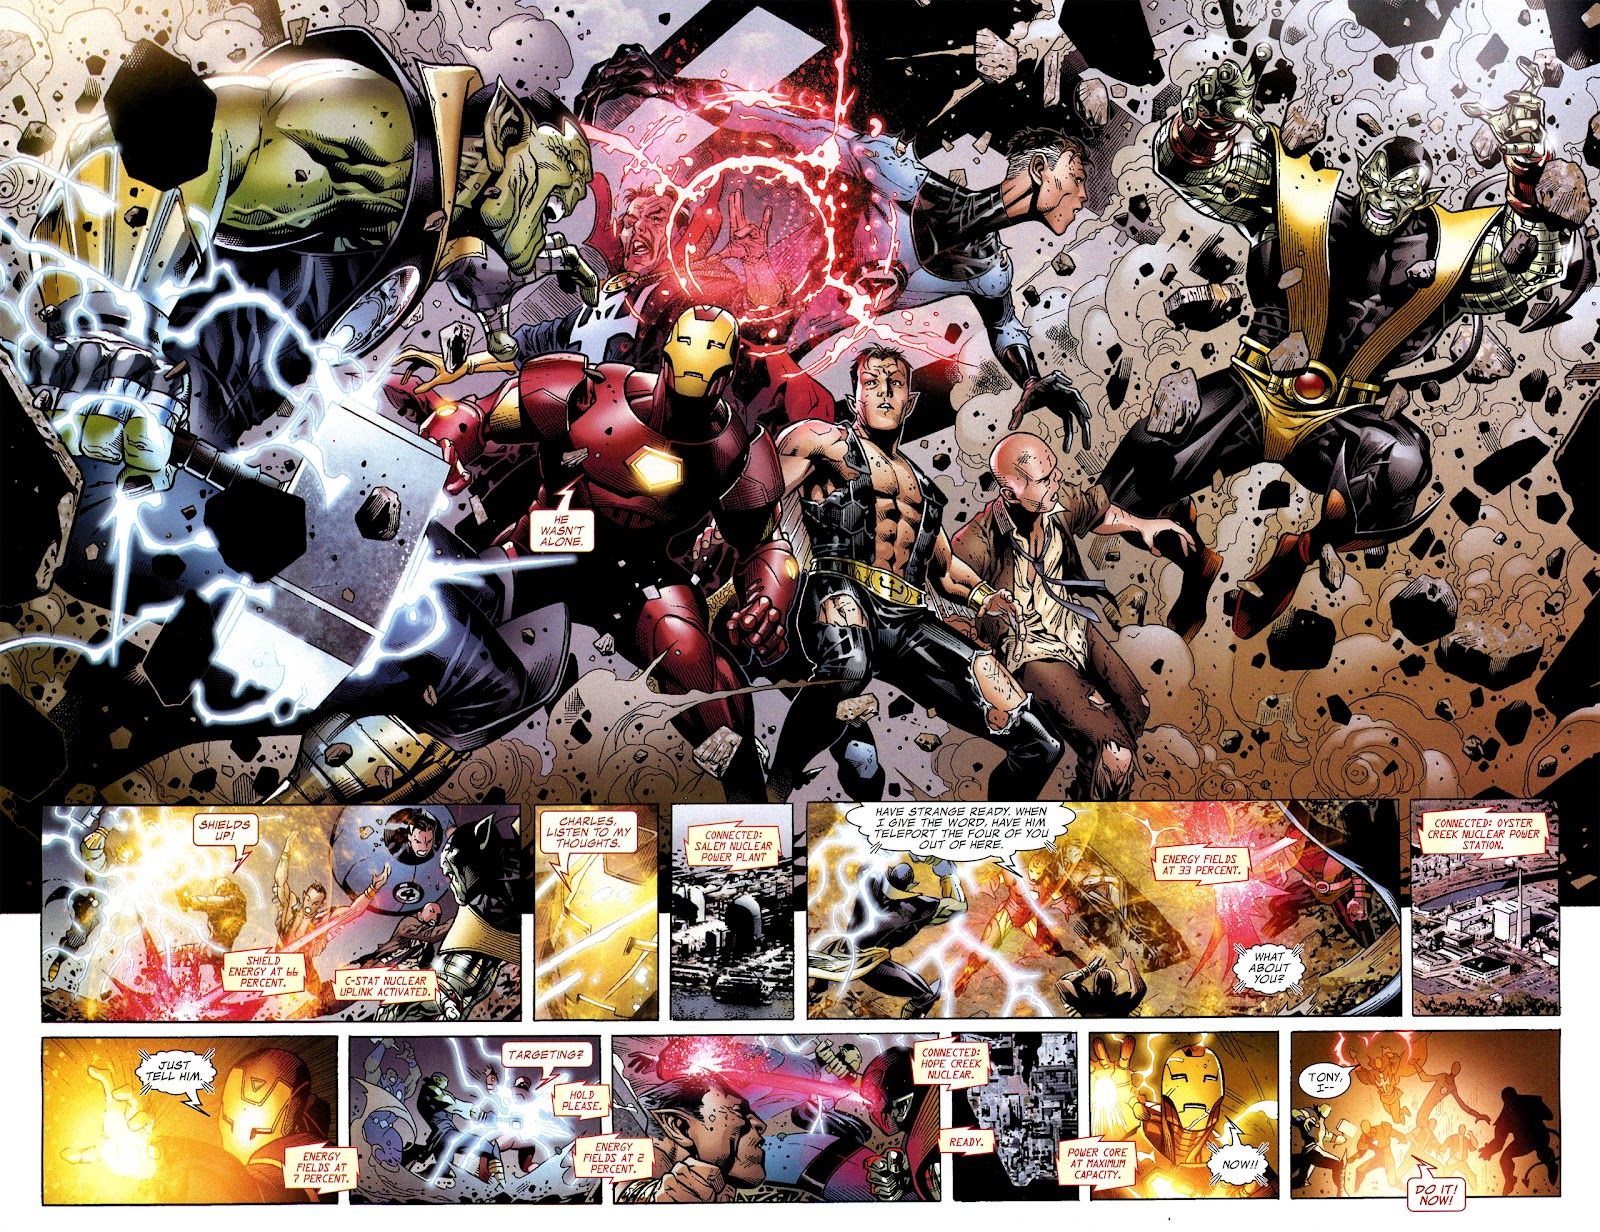 Quando os Illuminati são encurralados por um grupo de Skrulls superpoderosos, o Homem de Ferro salva a equipe conectando-se telecineticamente com o Professor X para que o Doutor Estranho teletransporte o grupo para um local seguro antes que ele inicie uma explosão nuclear.